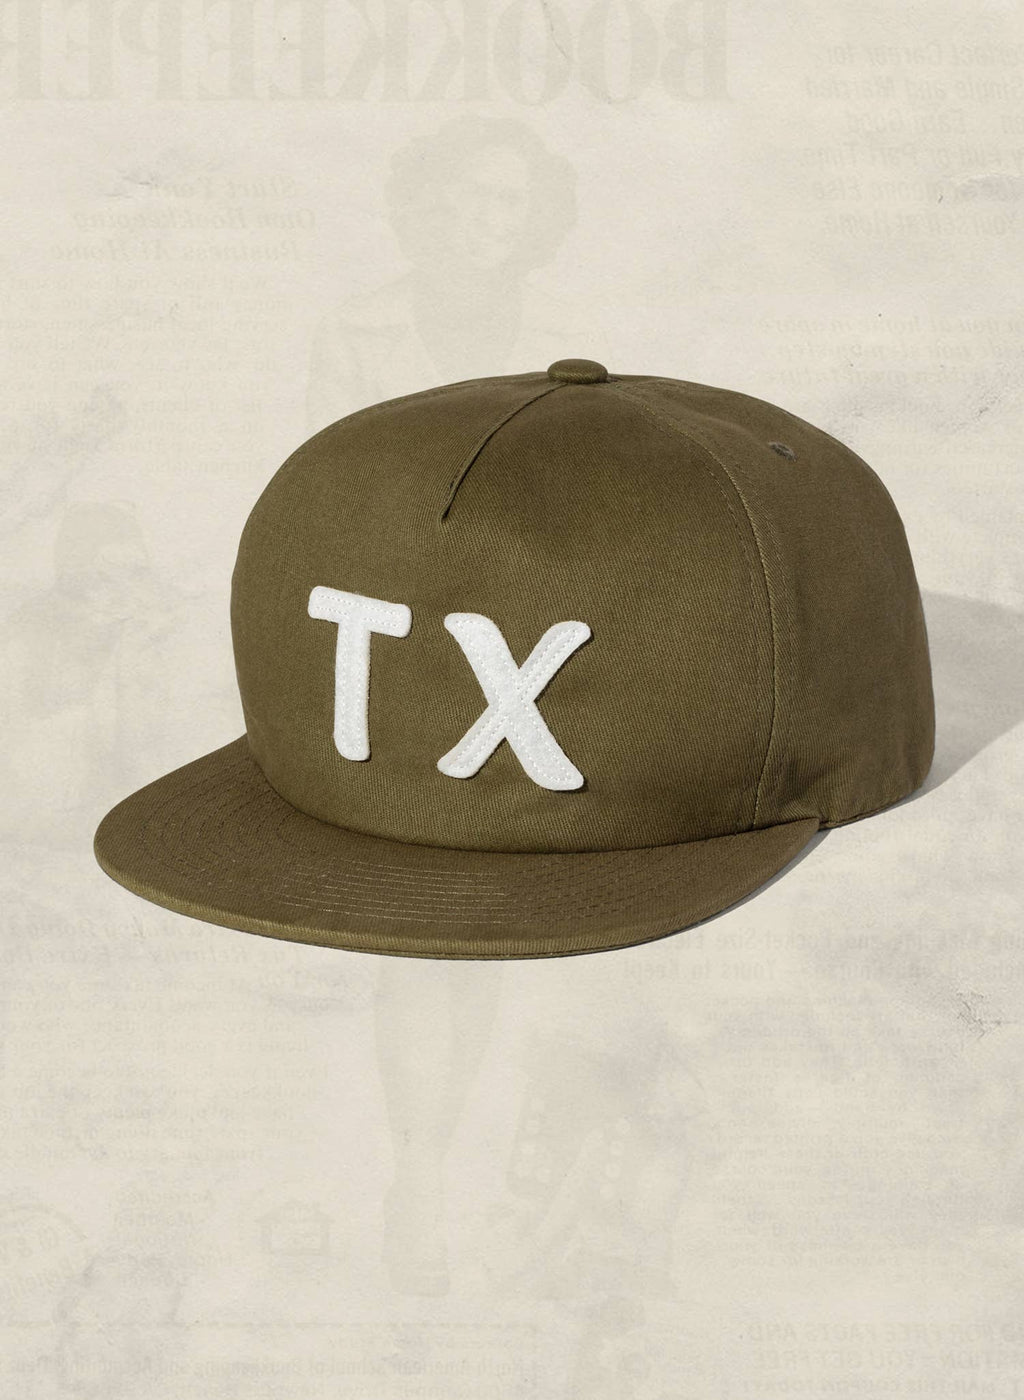 tx felt | field trip hat